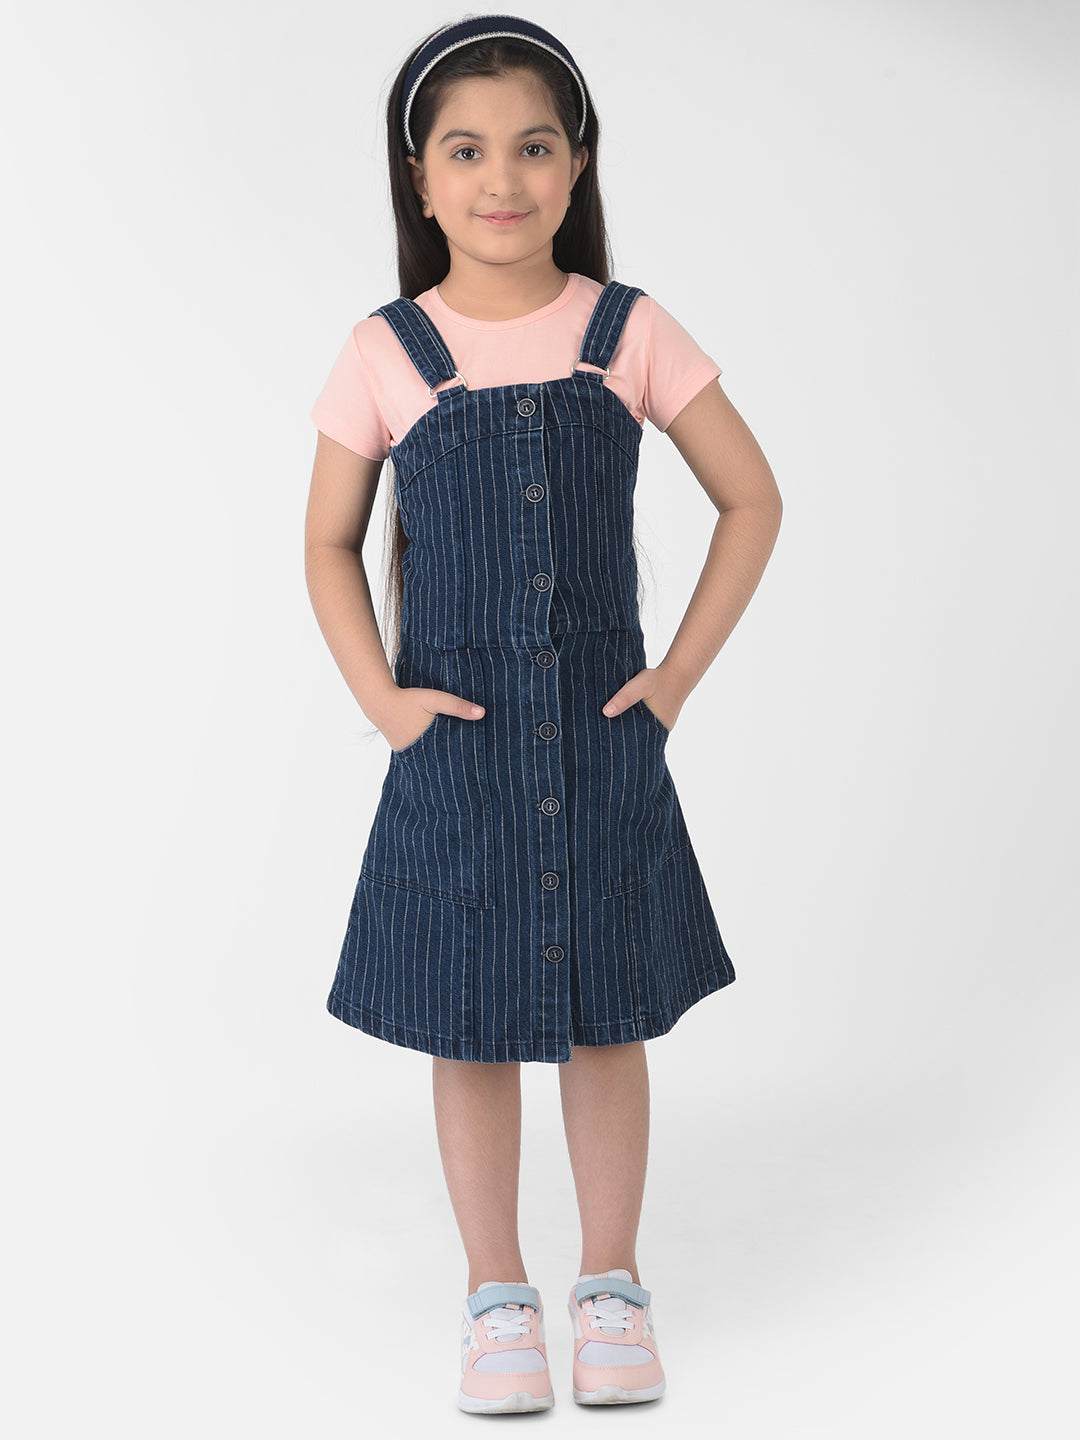 Navy Blue Striped Pinafore Dress - Girls Dress